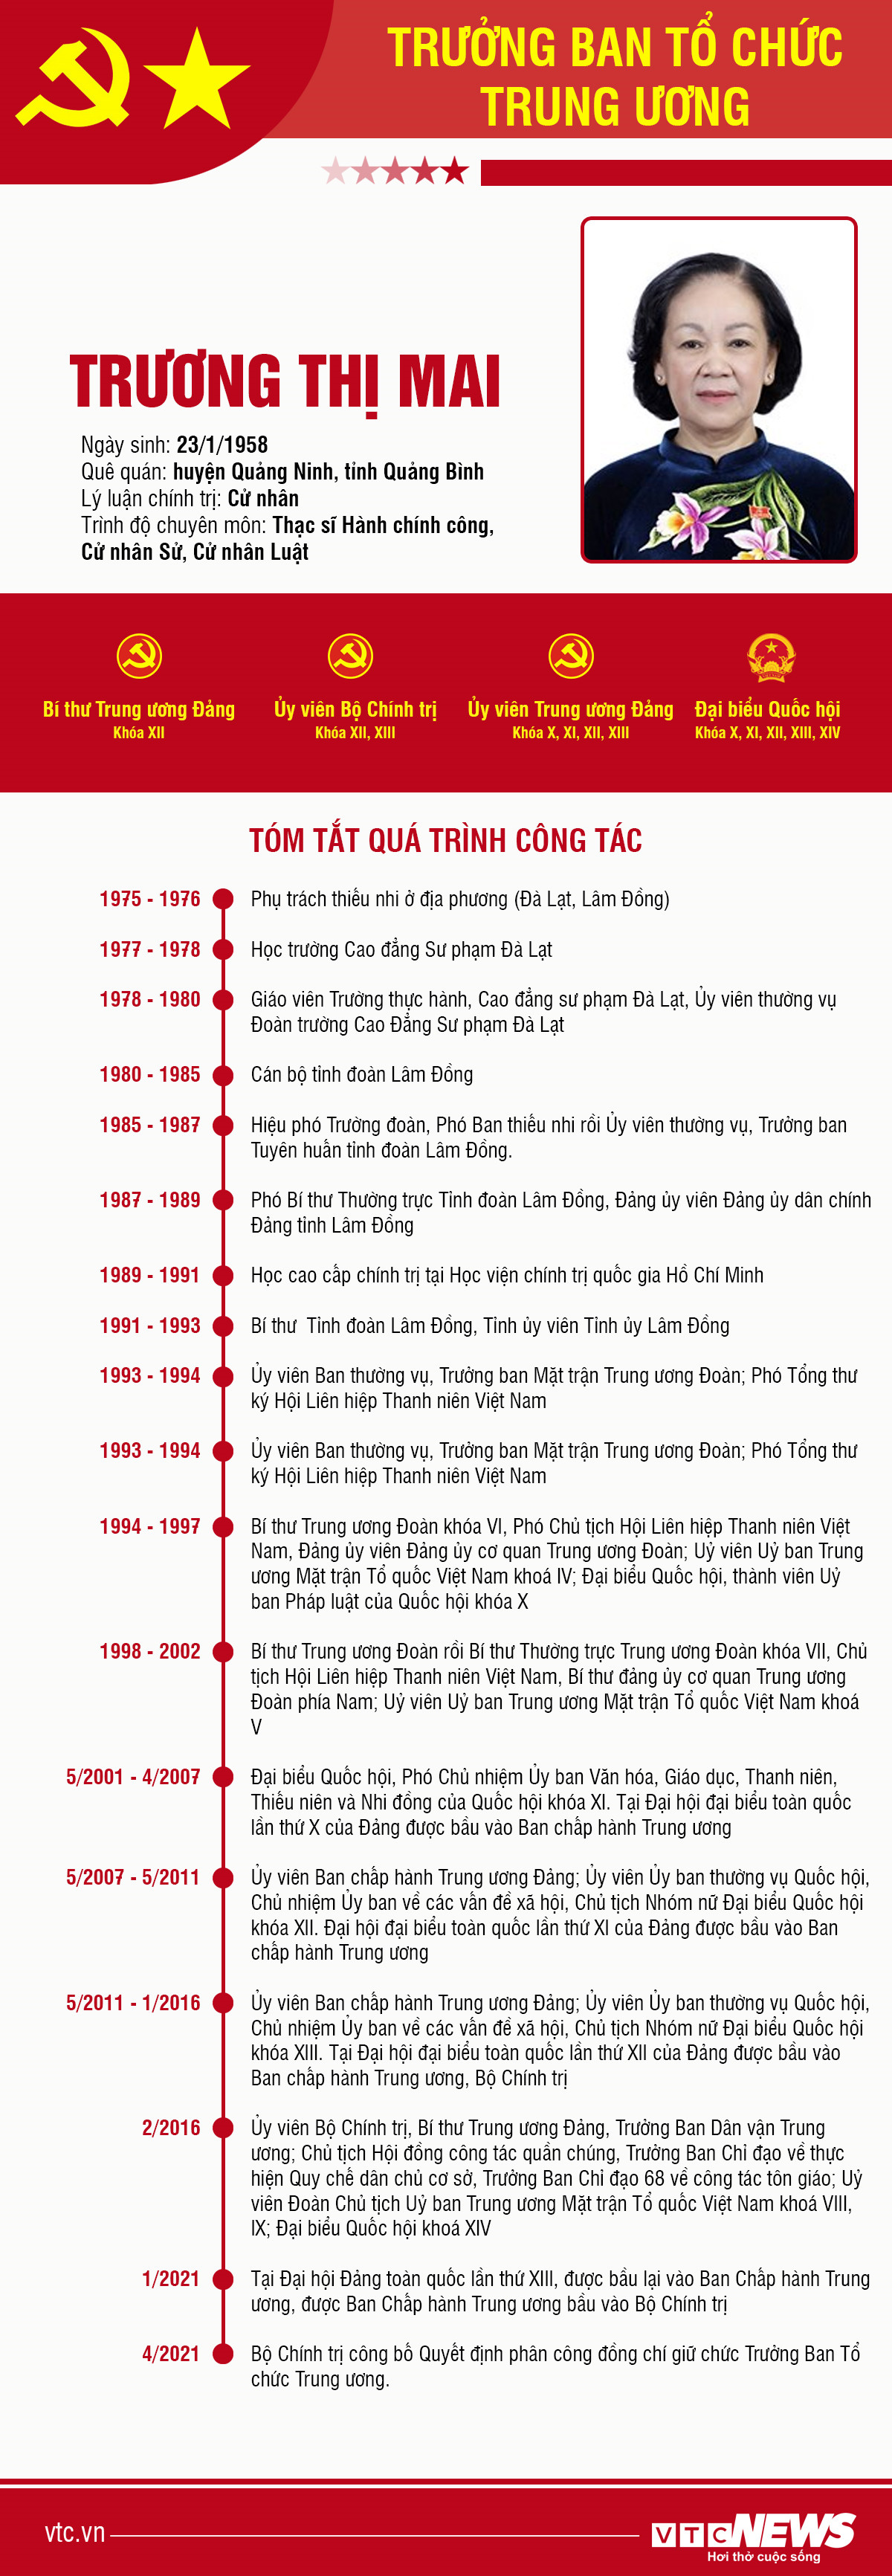 Infographic: Sự nghiệp Trưởng ban Tổ chức Trung ương Trương Thị Mai - 1